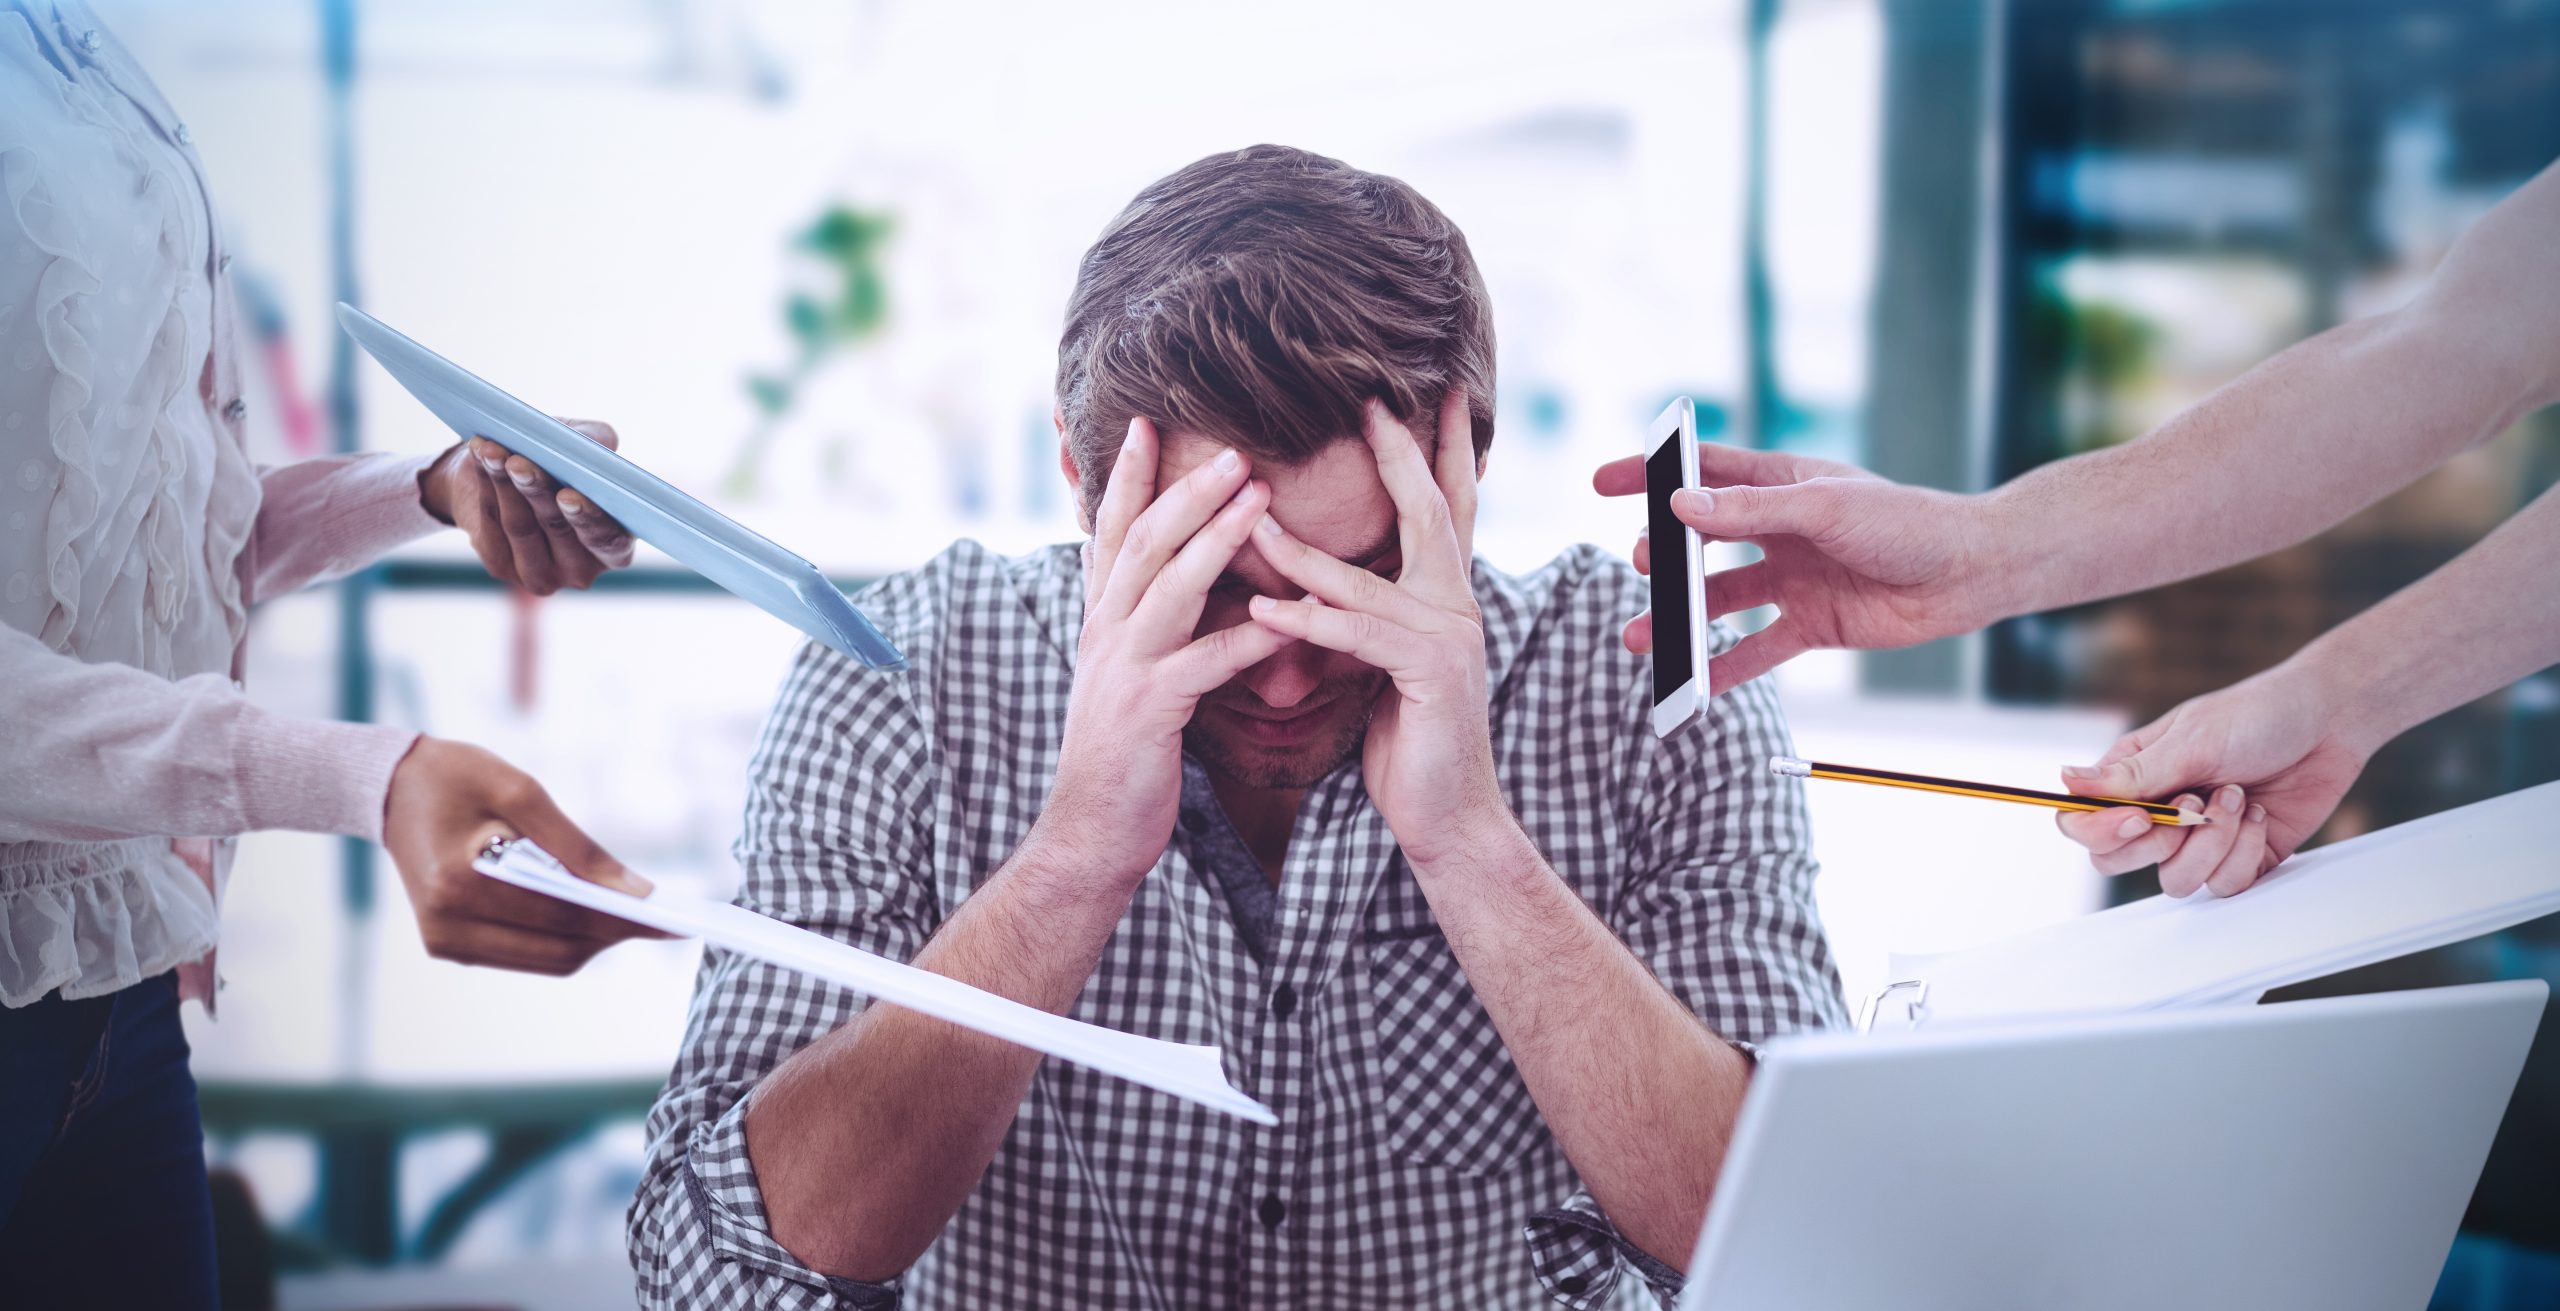 Imagem mostra homem de camisa com as mãos sobre o rosto, simbolizando stress no ambiente de trabalho. Ele está sendo constantemente interrompido por outras pessoas